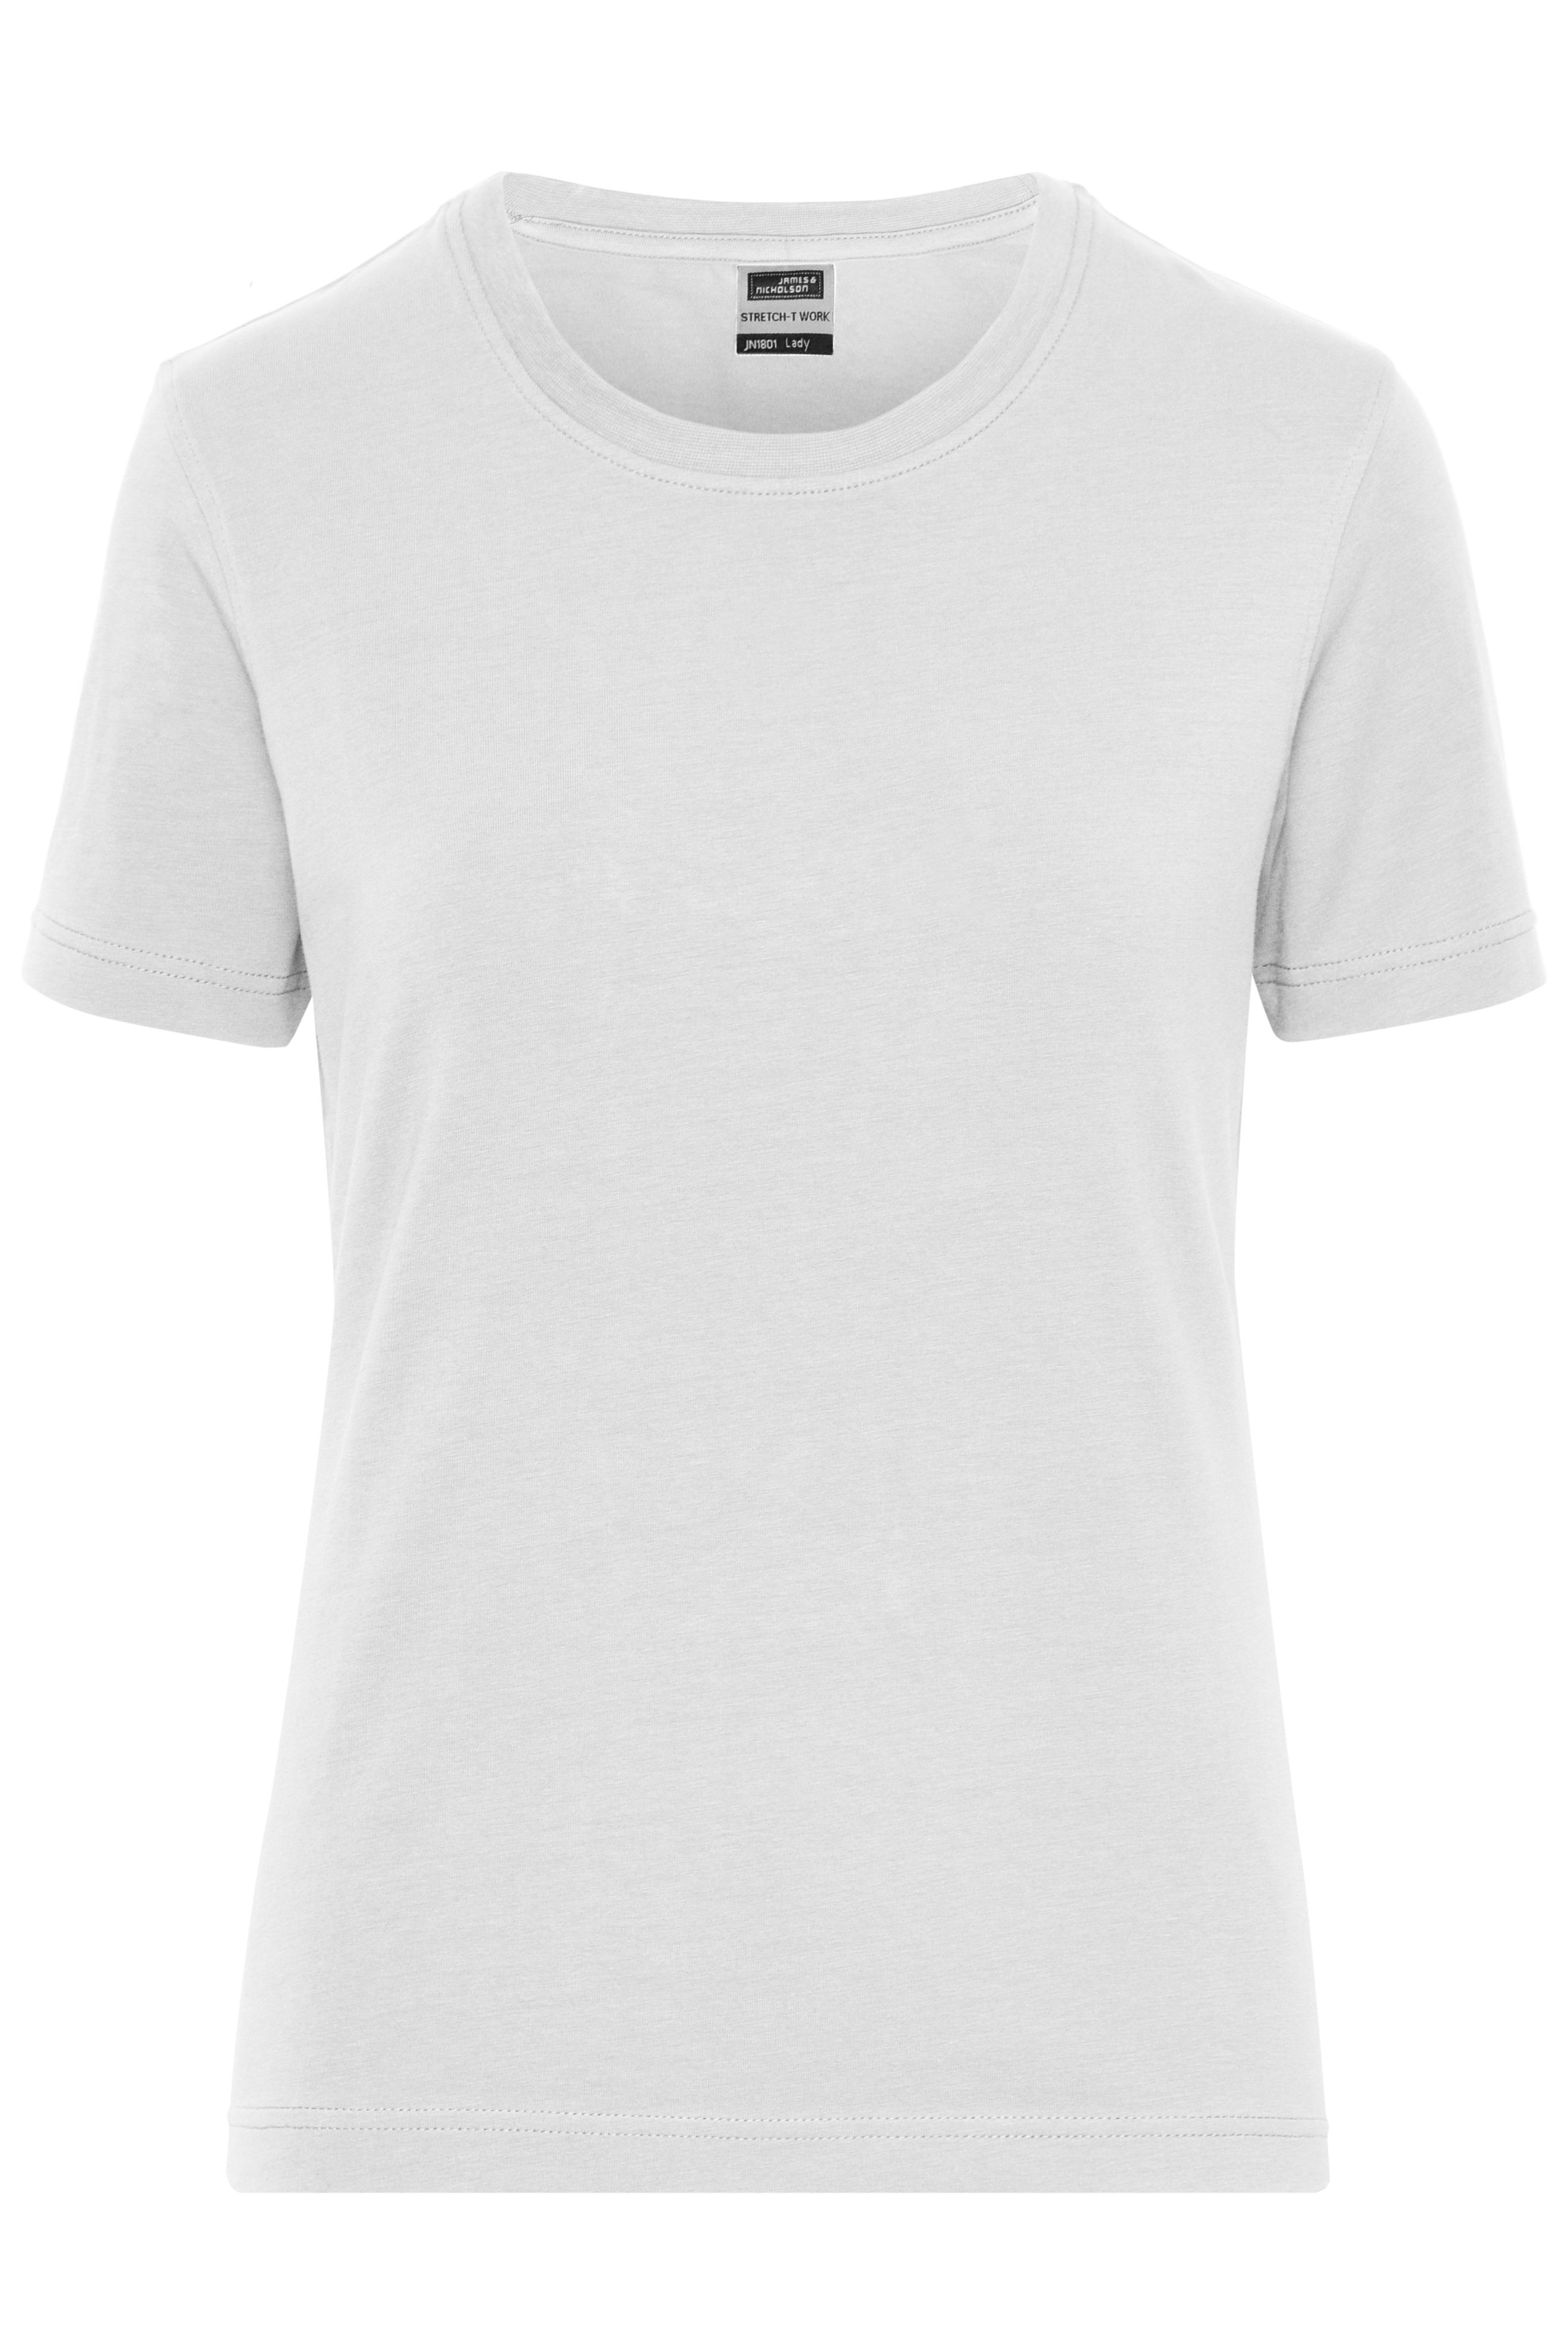 Ladies' BIO Stretch-T Work - SOLID - JN1801 T-Shirt aus weichem Elastic-Single-Jersey